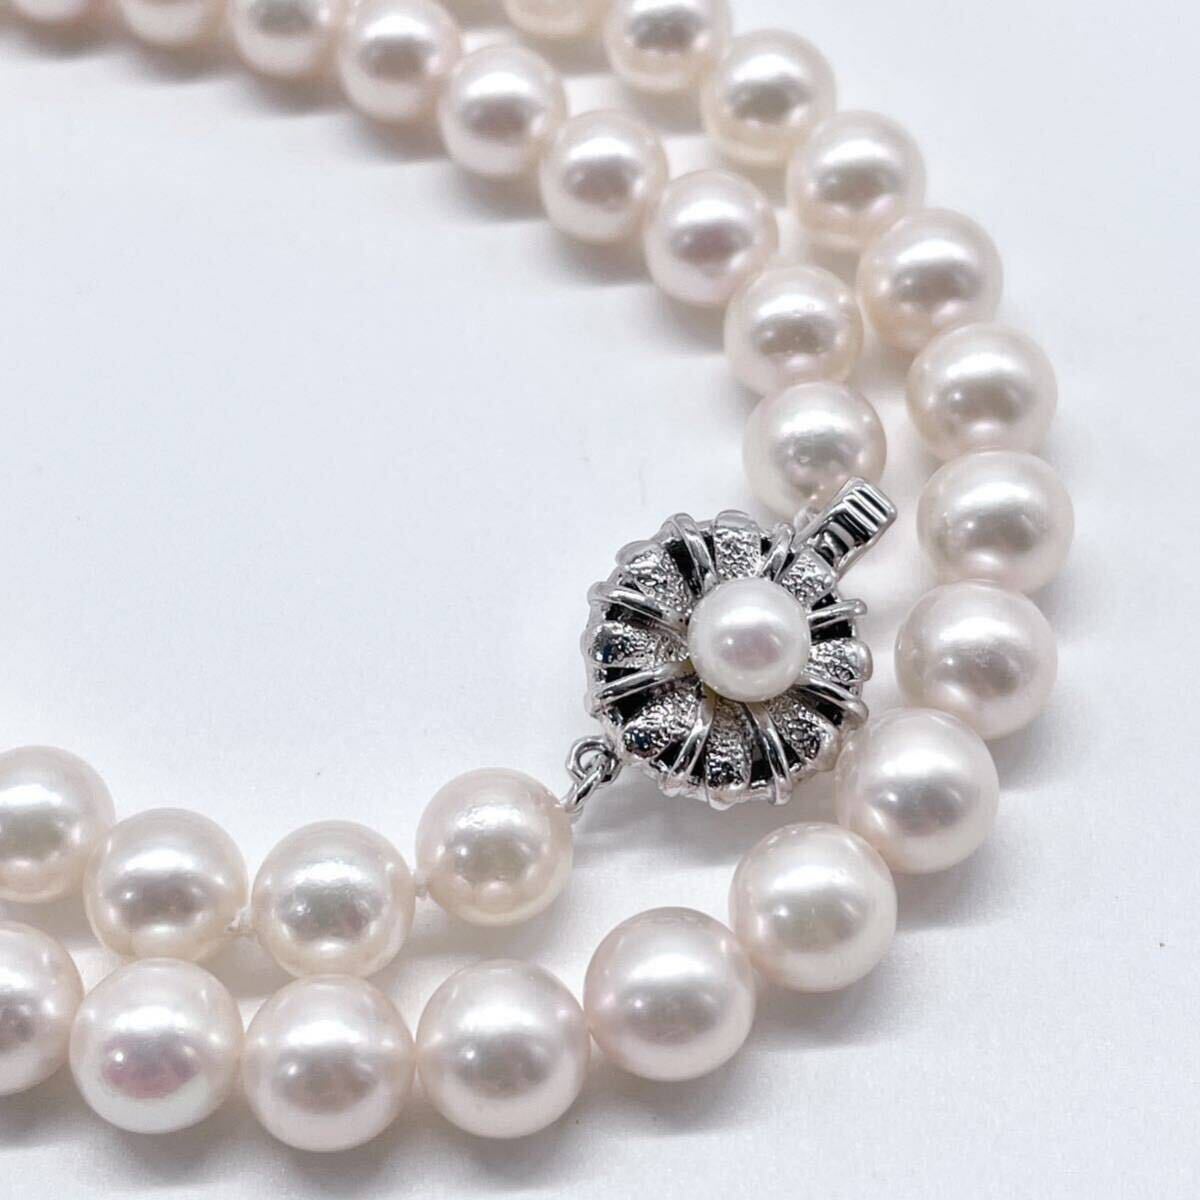 テリ最強 極美品 アコヤ真珠 ネックレス 7.0-7.5mm アコヤパール ラウンド pearl necklace jewelry silverの画像1